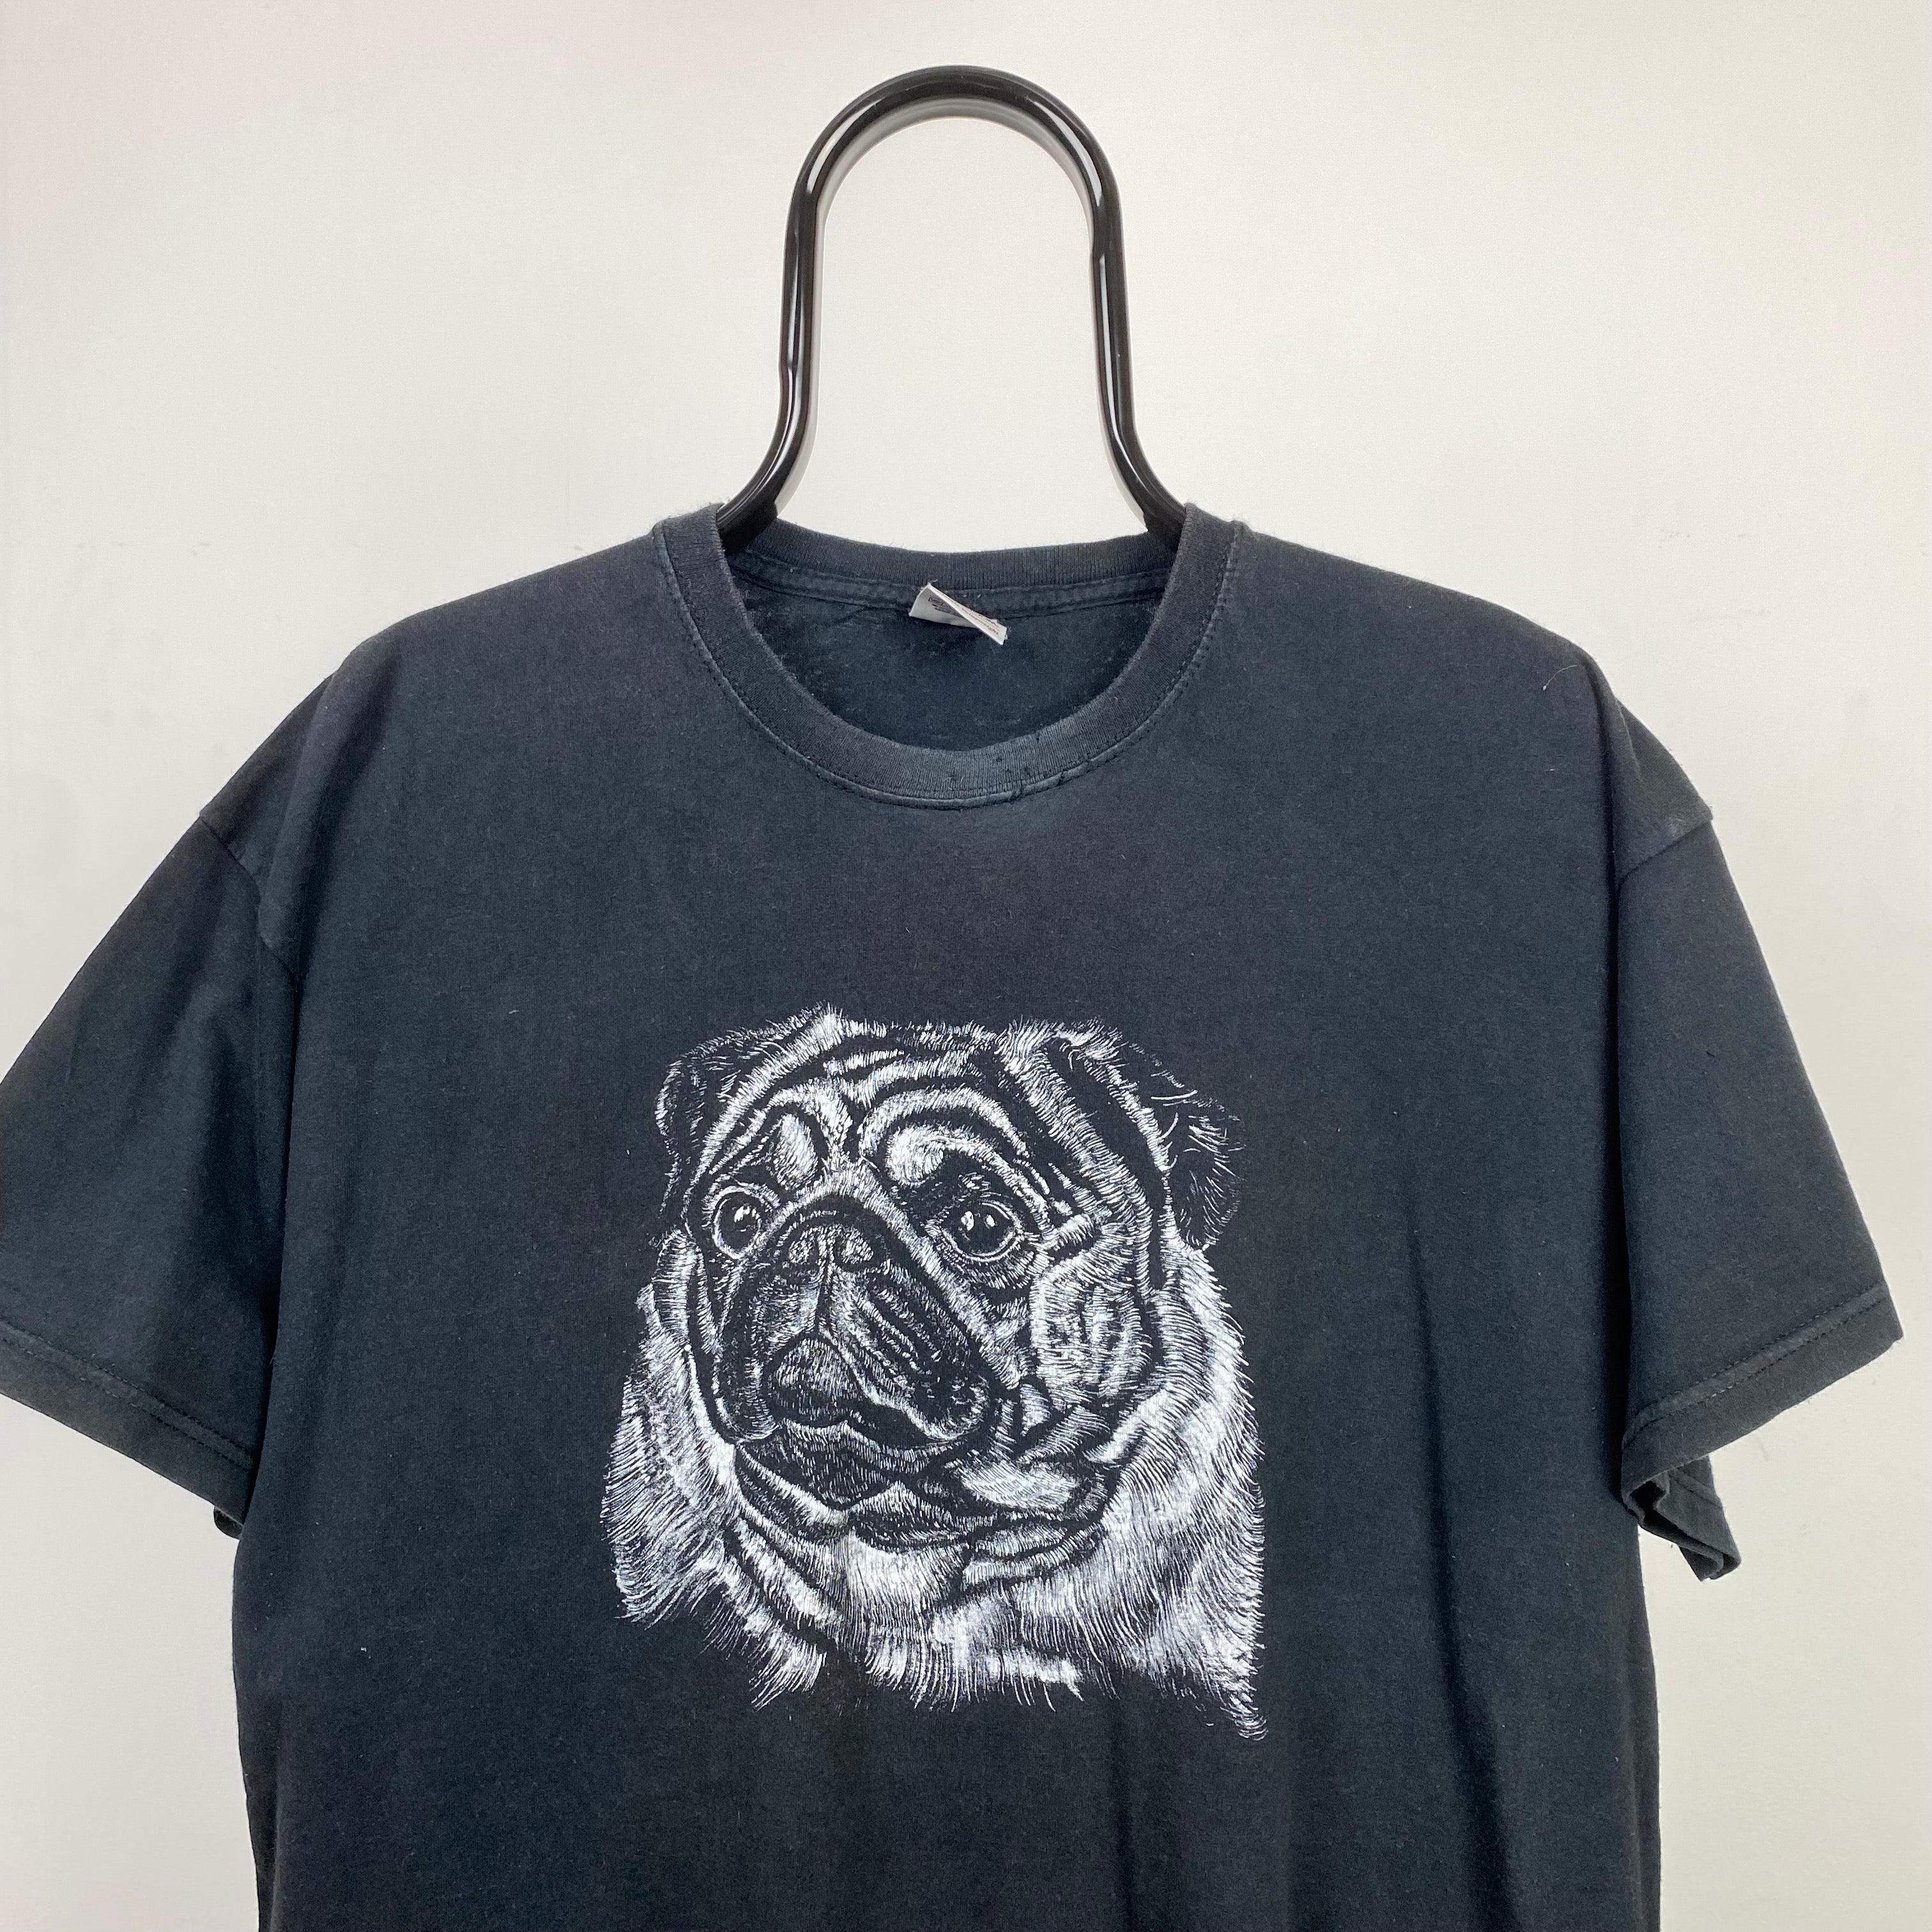 Retro 90s Pug T-Shirt Black Large